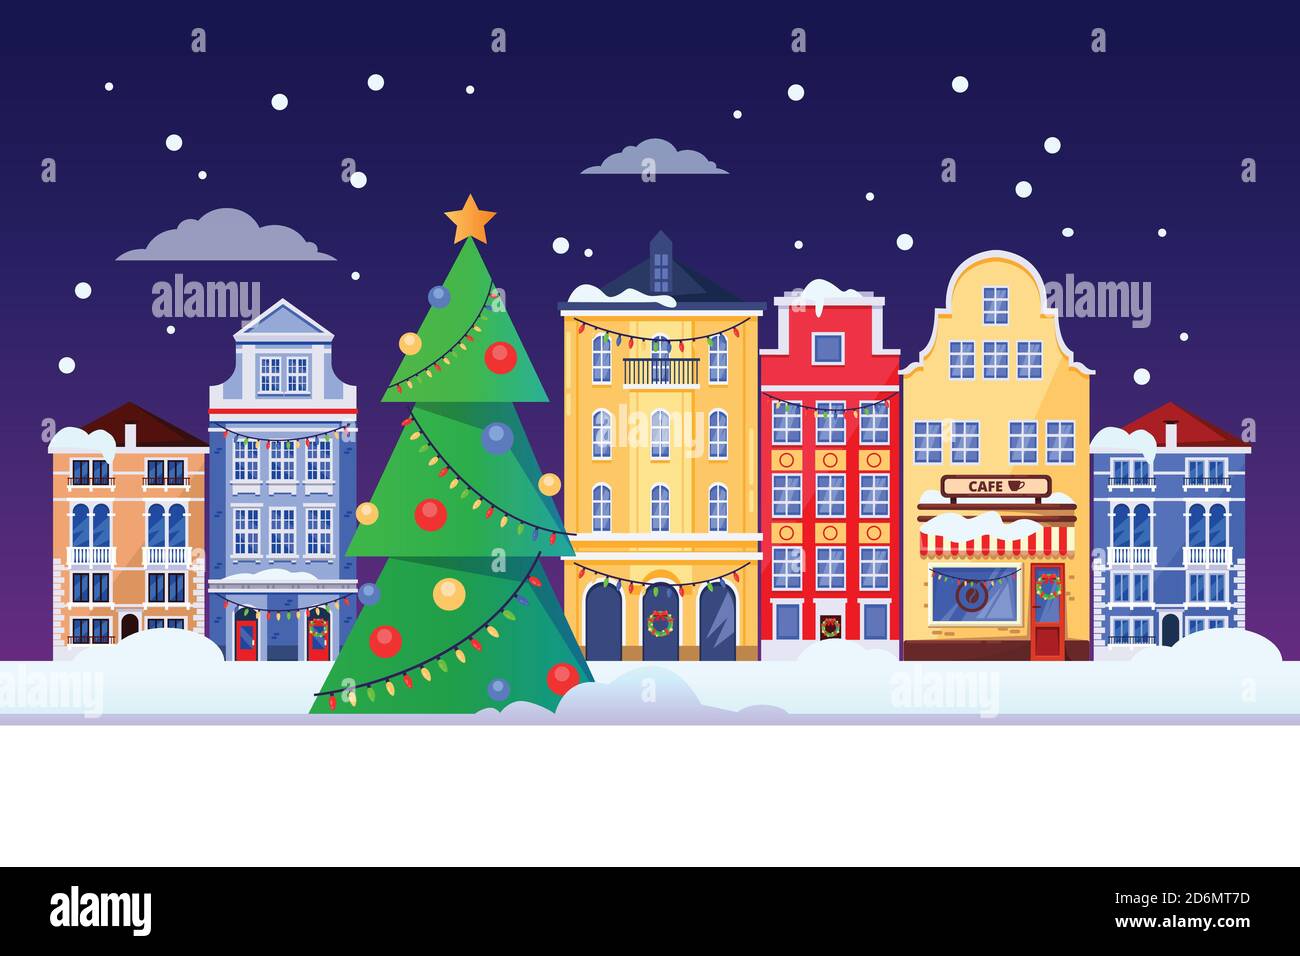 Weihnachten und Neujahr Urlaub in alten Europa Stadt. Vektor-flache Abbildung der Stadtlandschaft mit Weihnachtsbaum und europäischen bunten Häusern Fassaden. Ca Stock Vektor